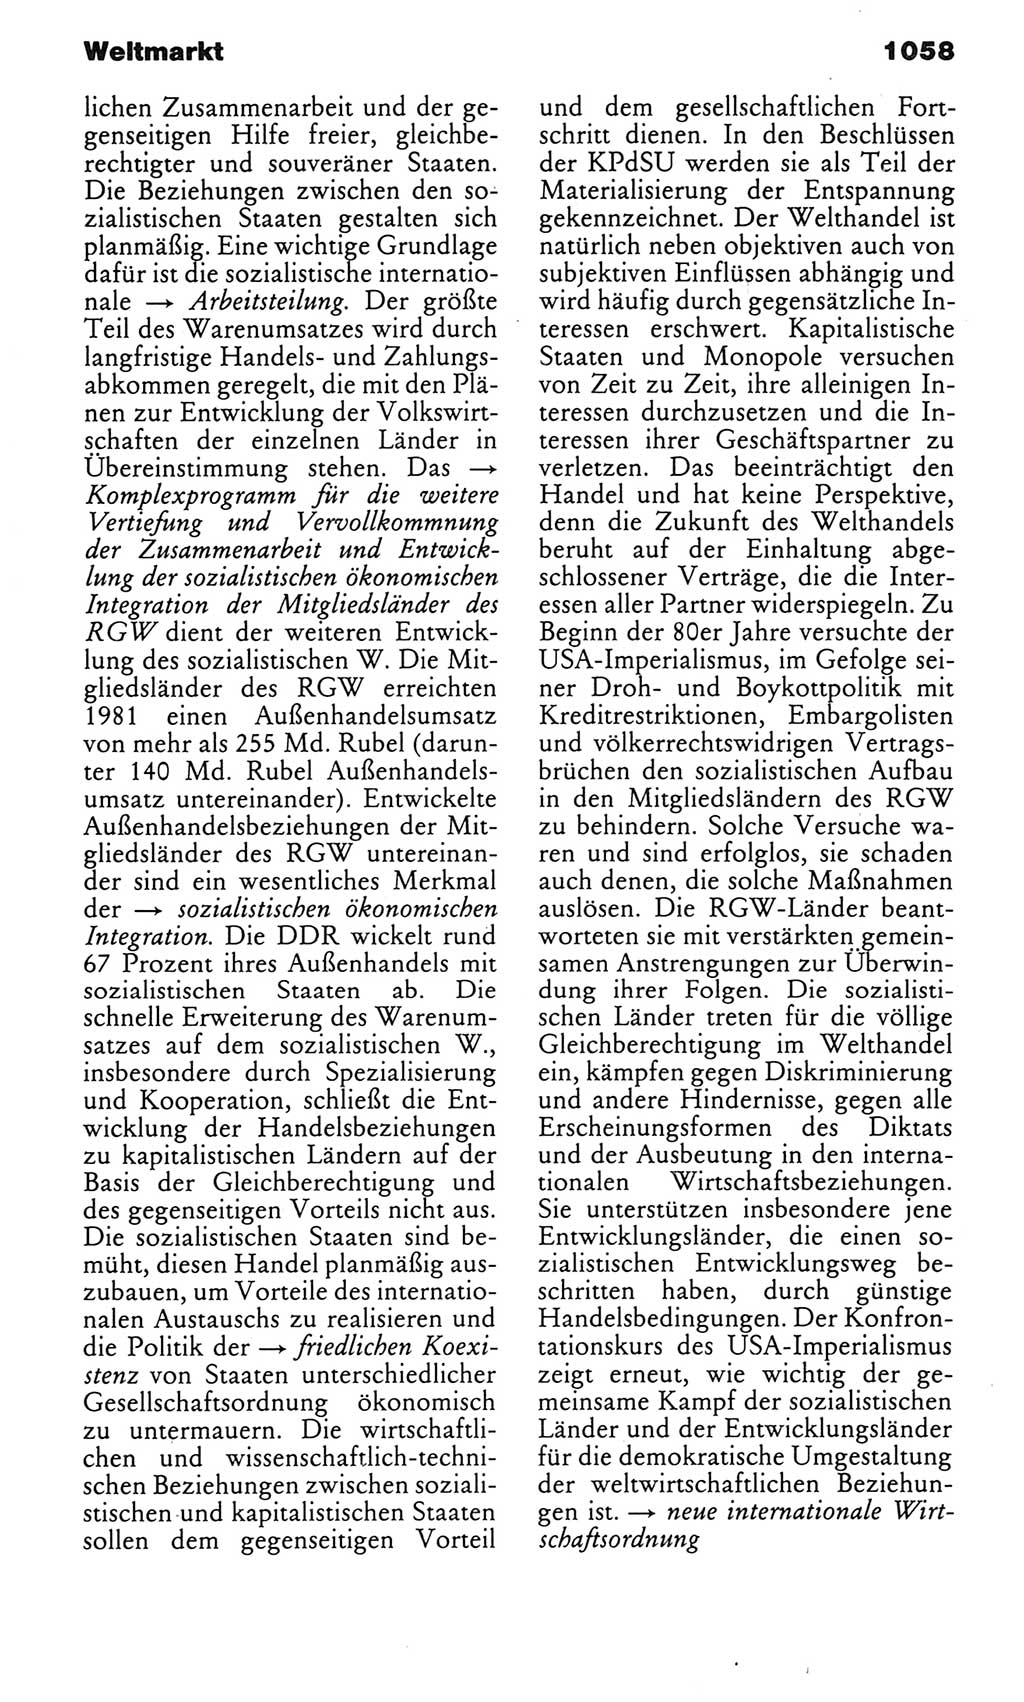 Kleines politisches Wörterbuch [Deutsche Demokratische Republik (DDR)] 1983, Seite 1058 (Kl. pol. Wb. DDR 1983, S. 1058)